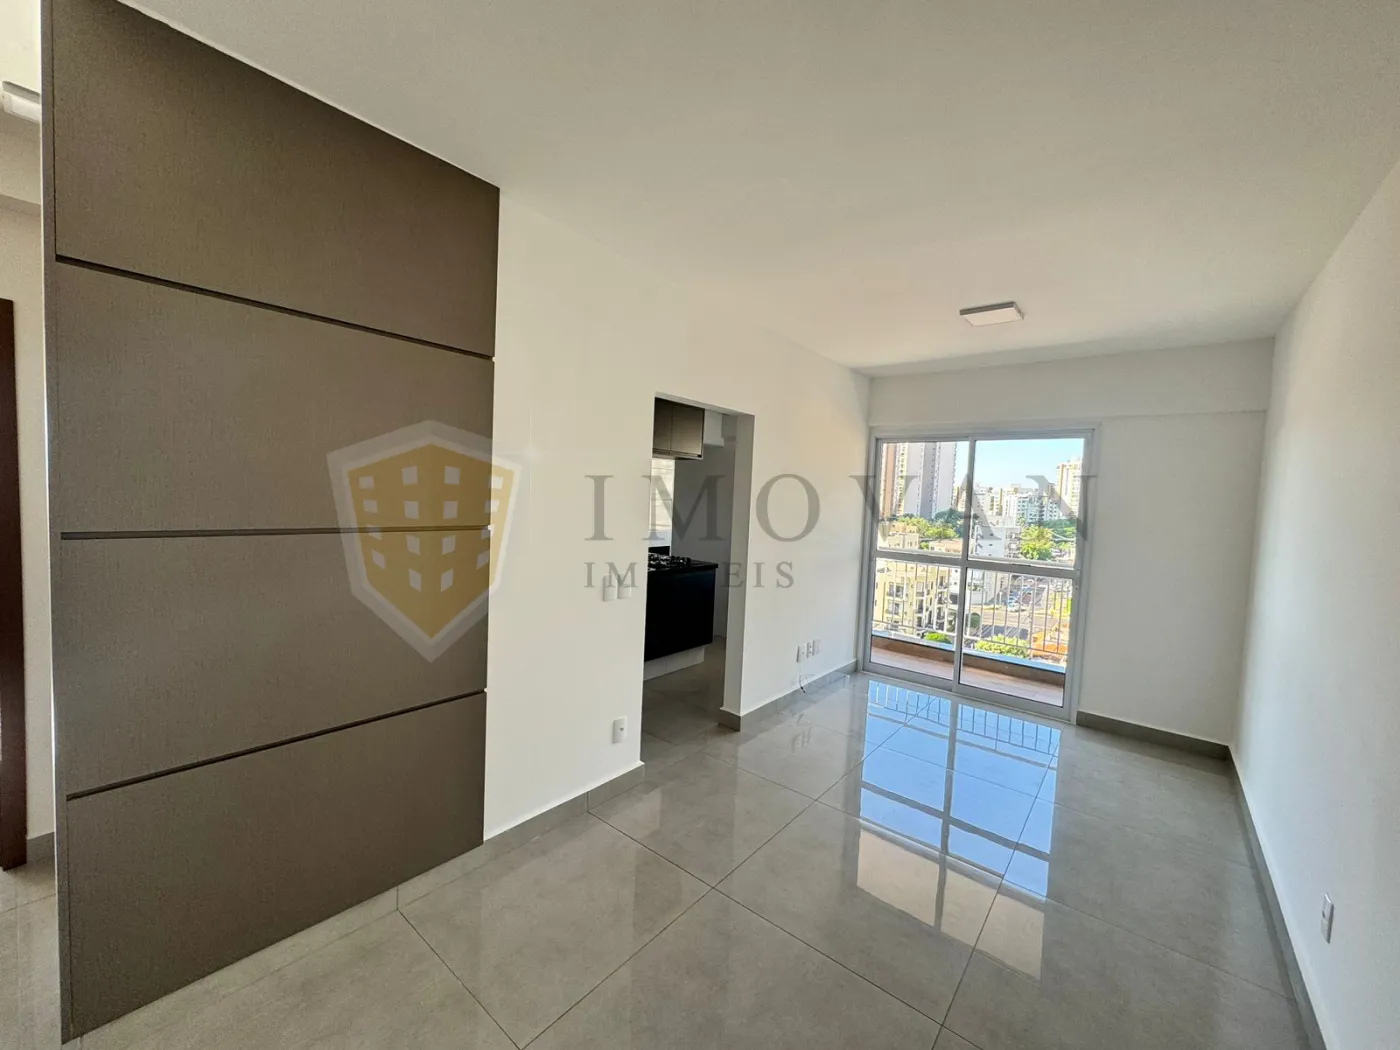 Alugar Apartamento / Padrão em Ribeirão Preto R$ 2.300,00 - Foto 3